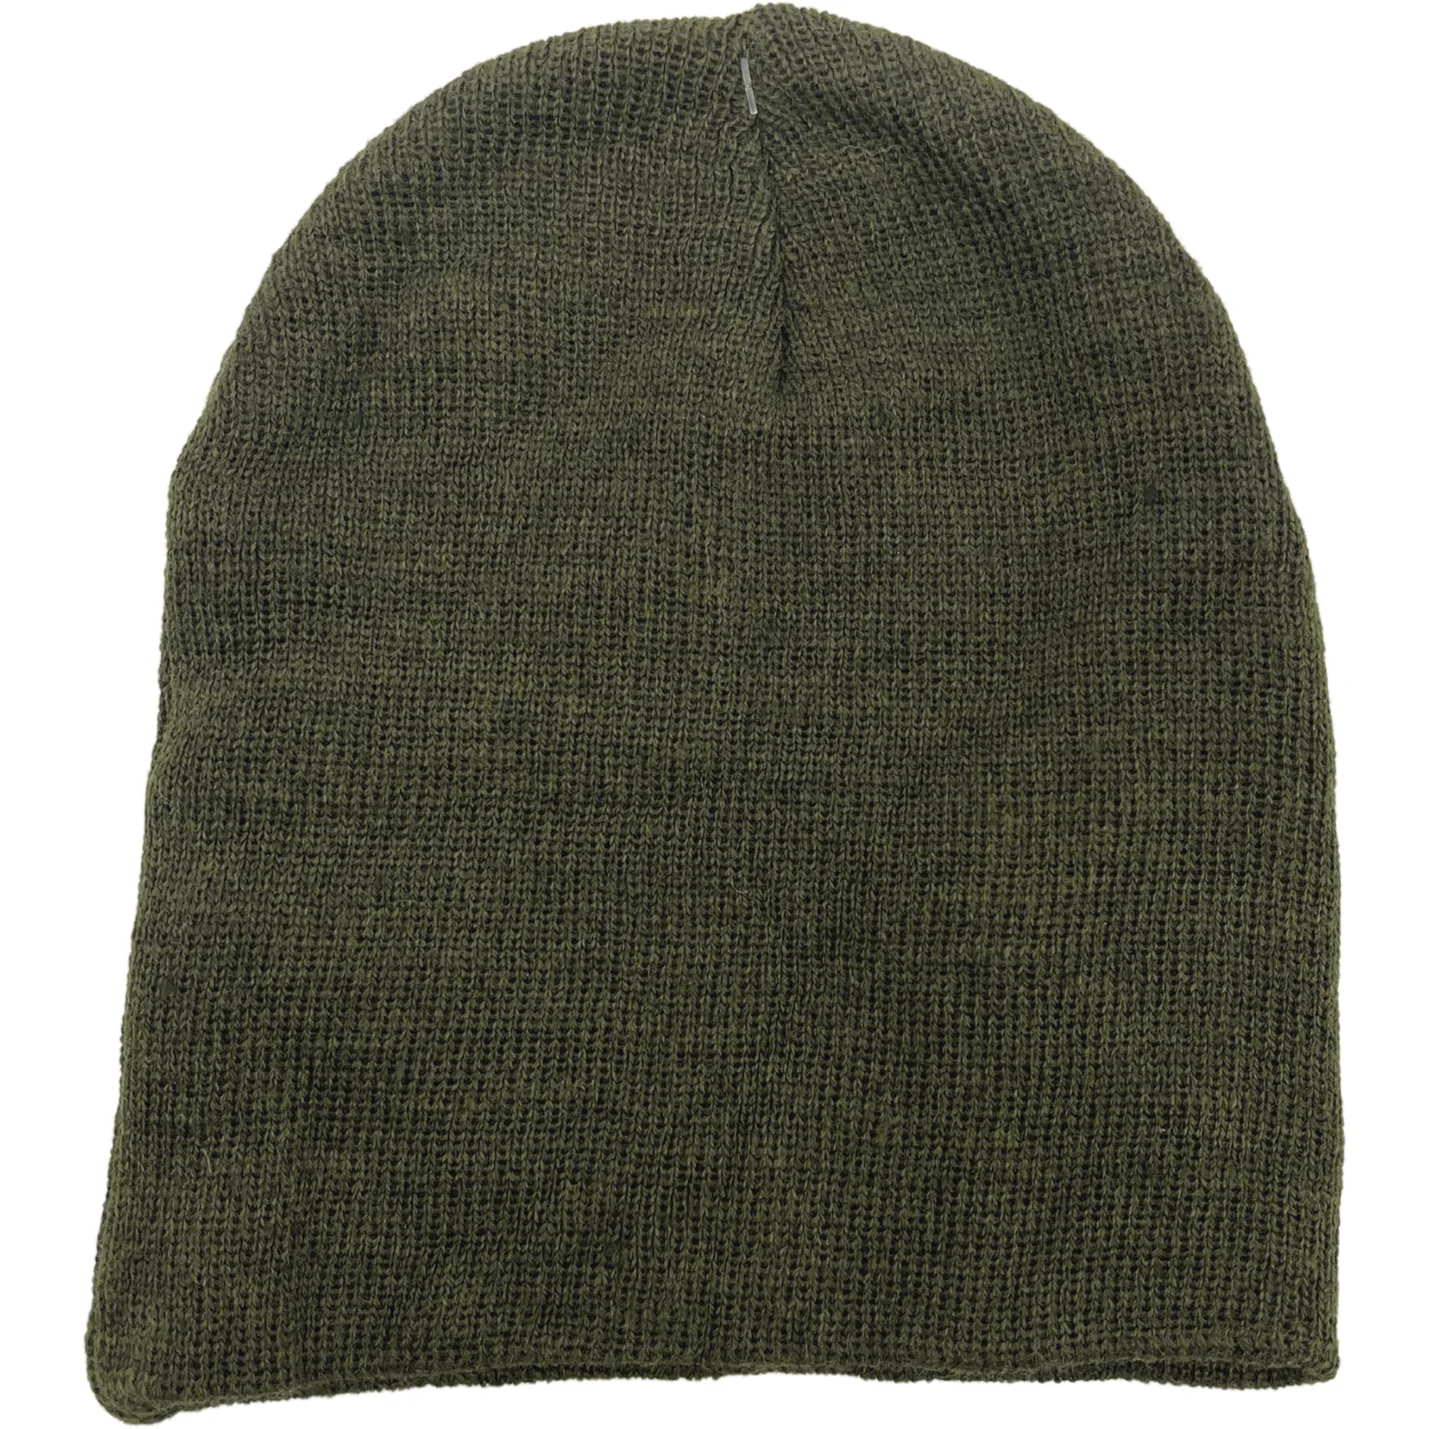 Children's Winter Hat / 2 Pack / Green & Black / Winter Toque / One Size